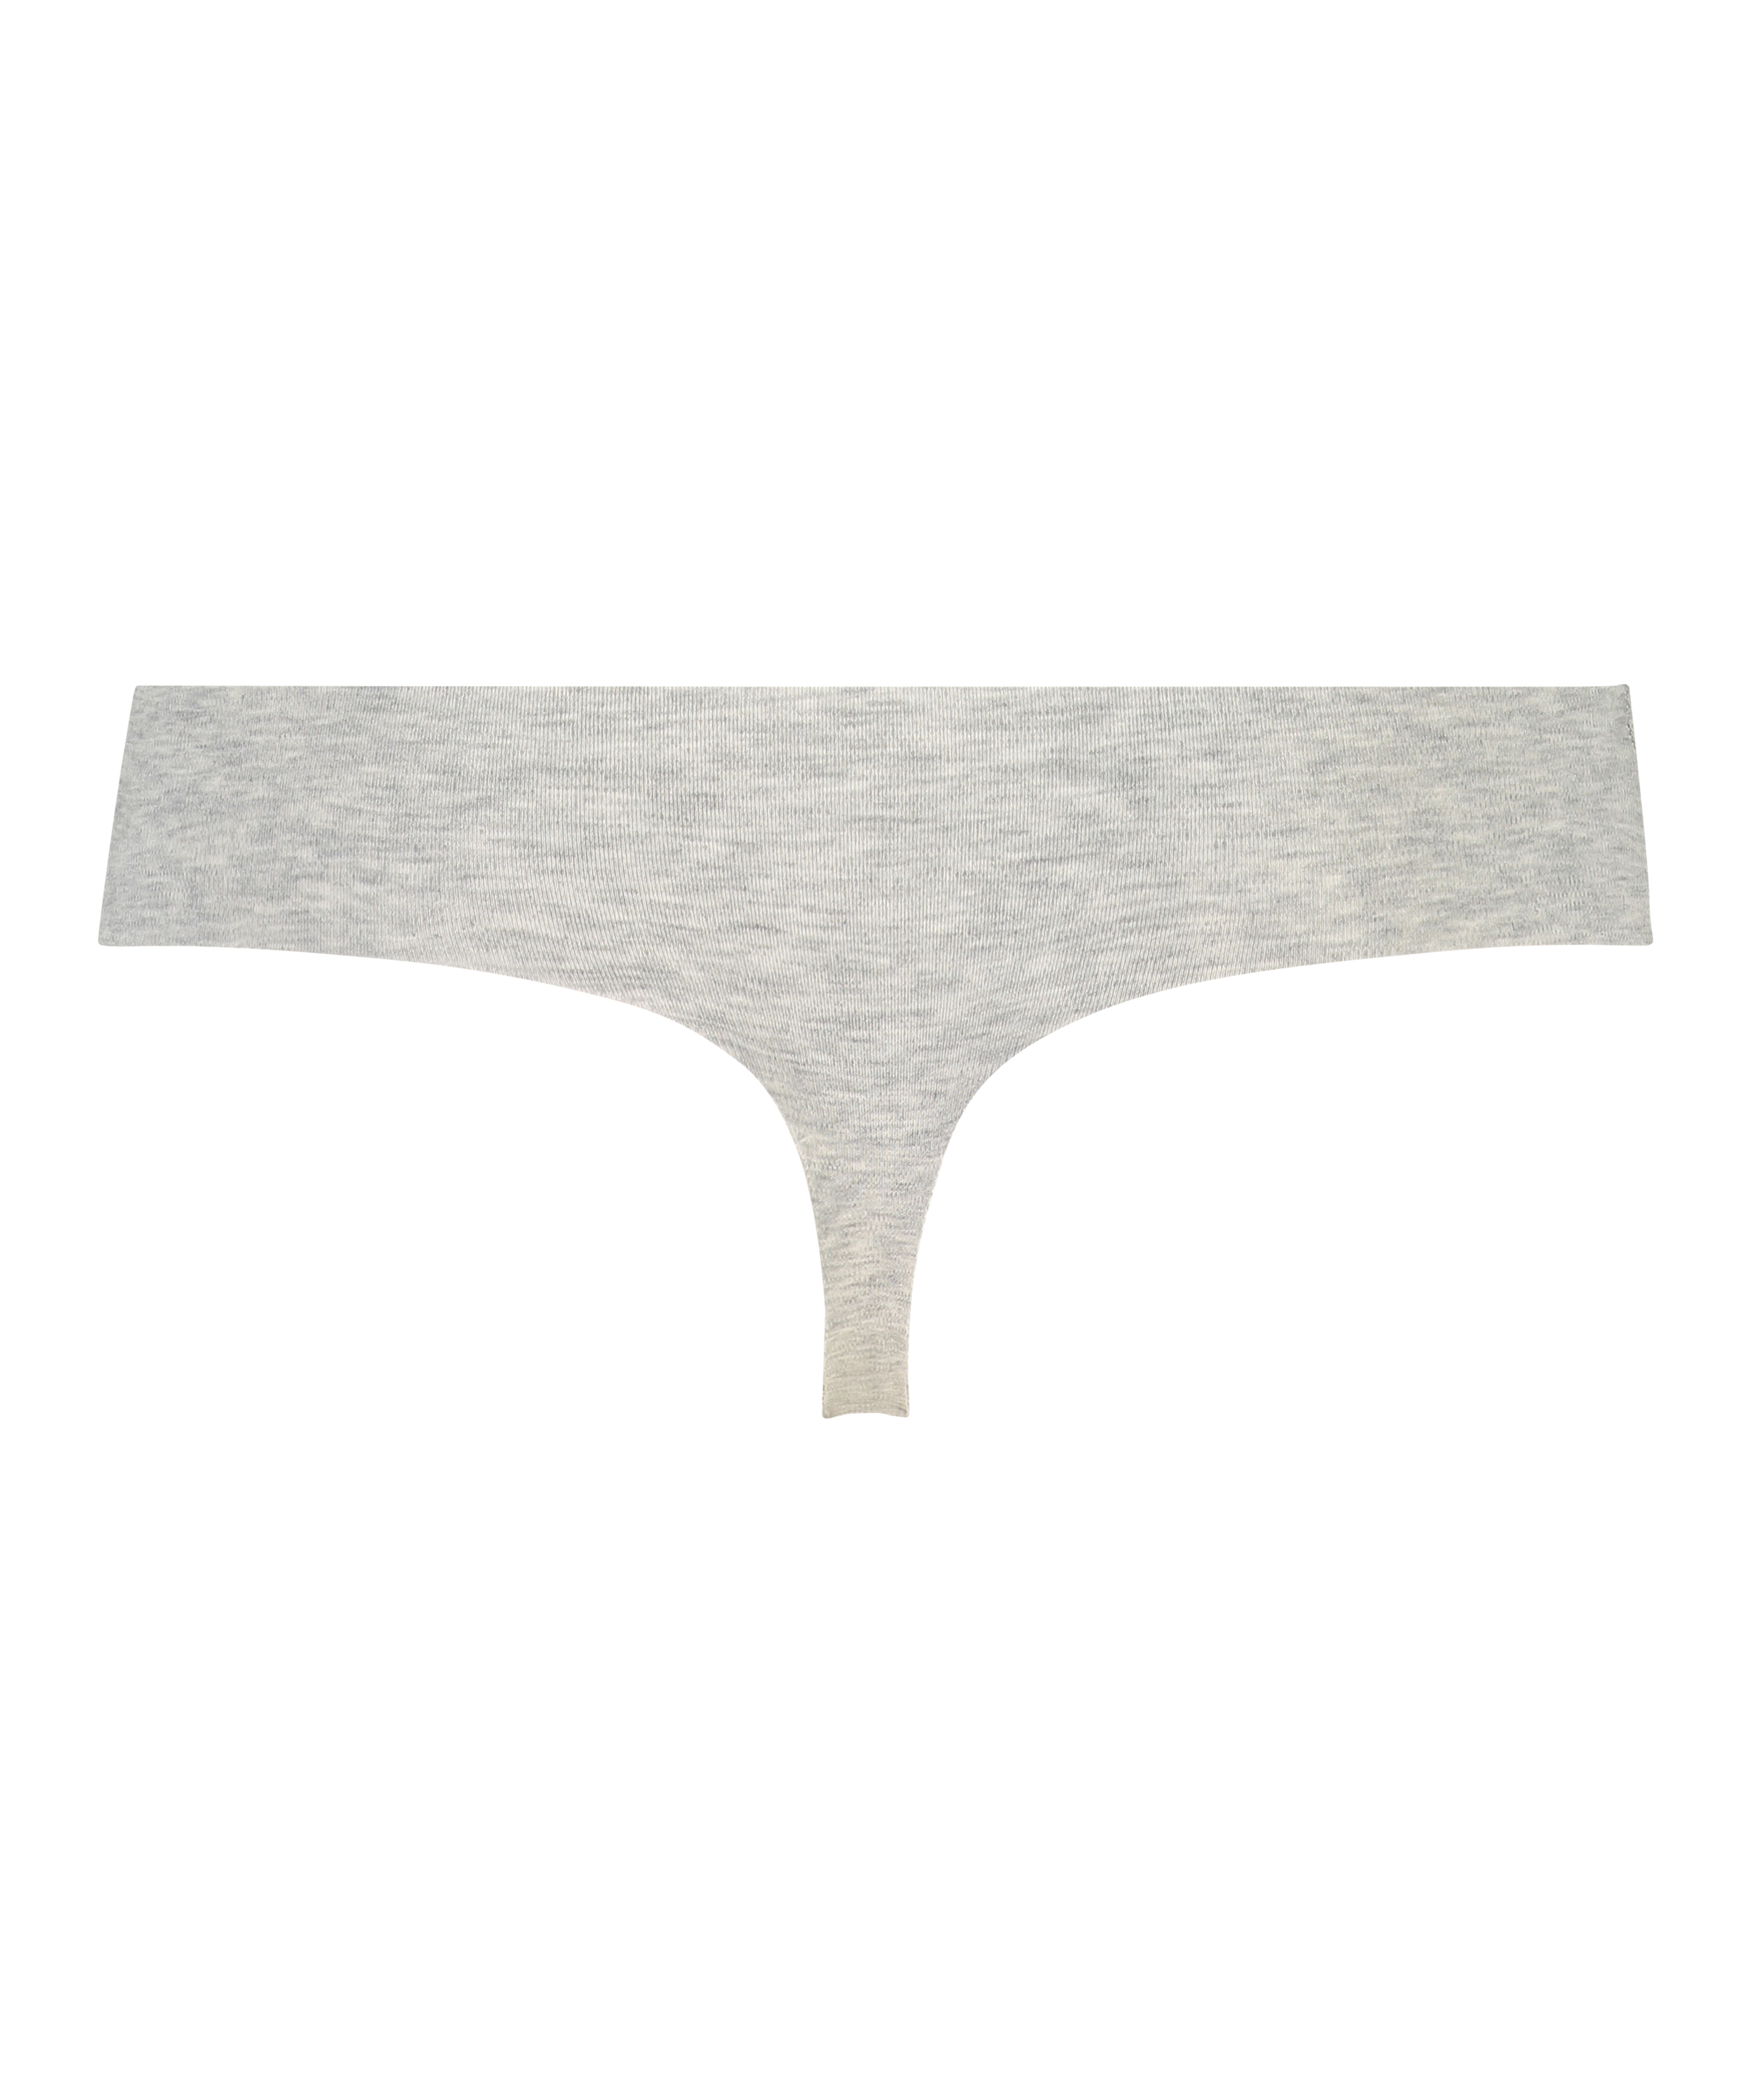 Invisible cotton thong, Gray, main